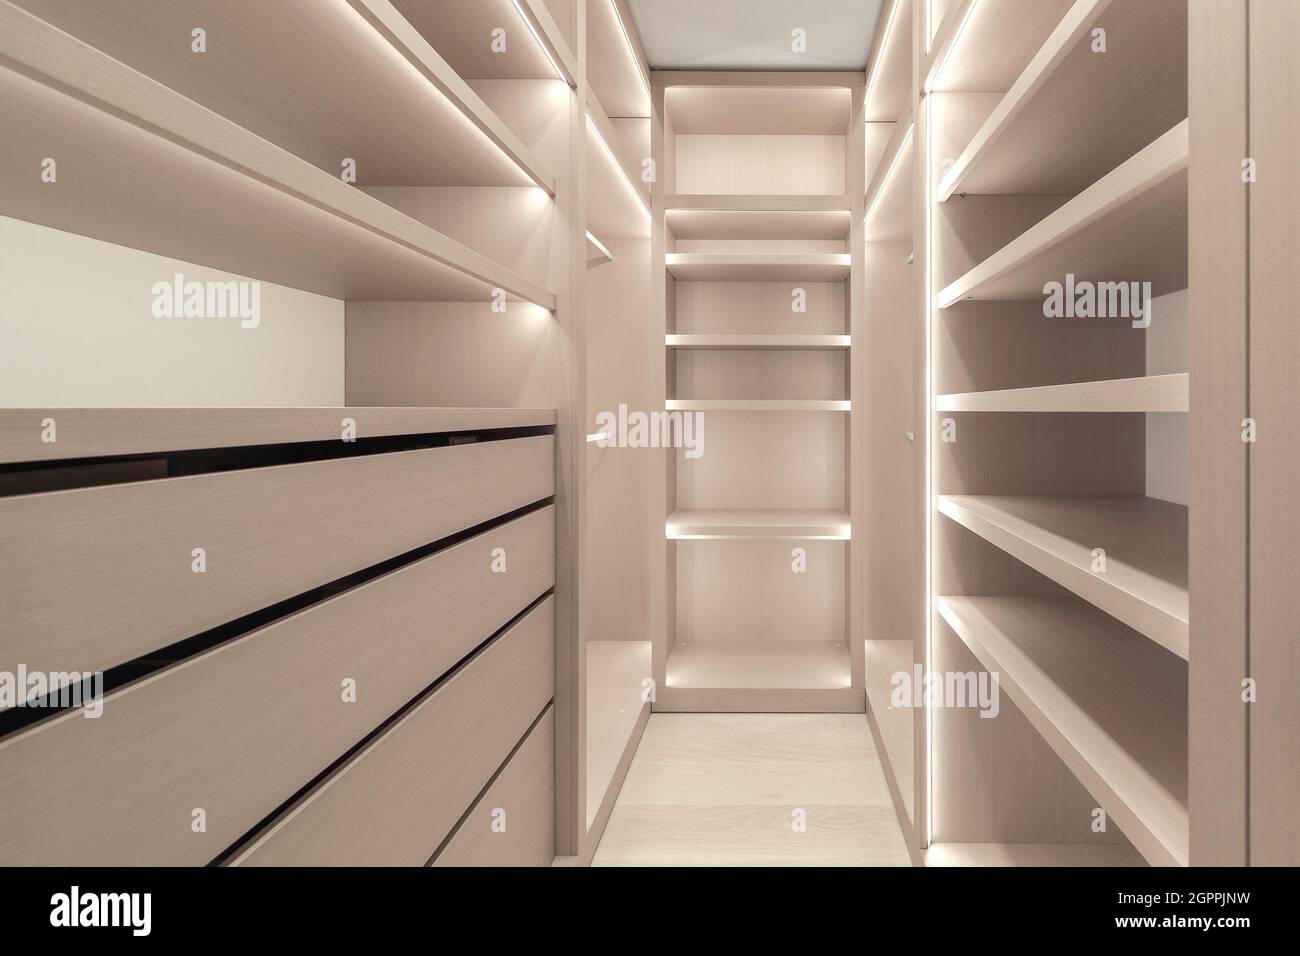 Estantes de madera con iluminación LED dentro del armario, la luz LED de  tira vertical y horizontal en los estantes del armario. moderno armario  minimalista Fotografía de stock - Alamy